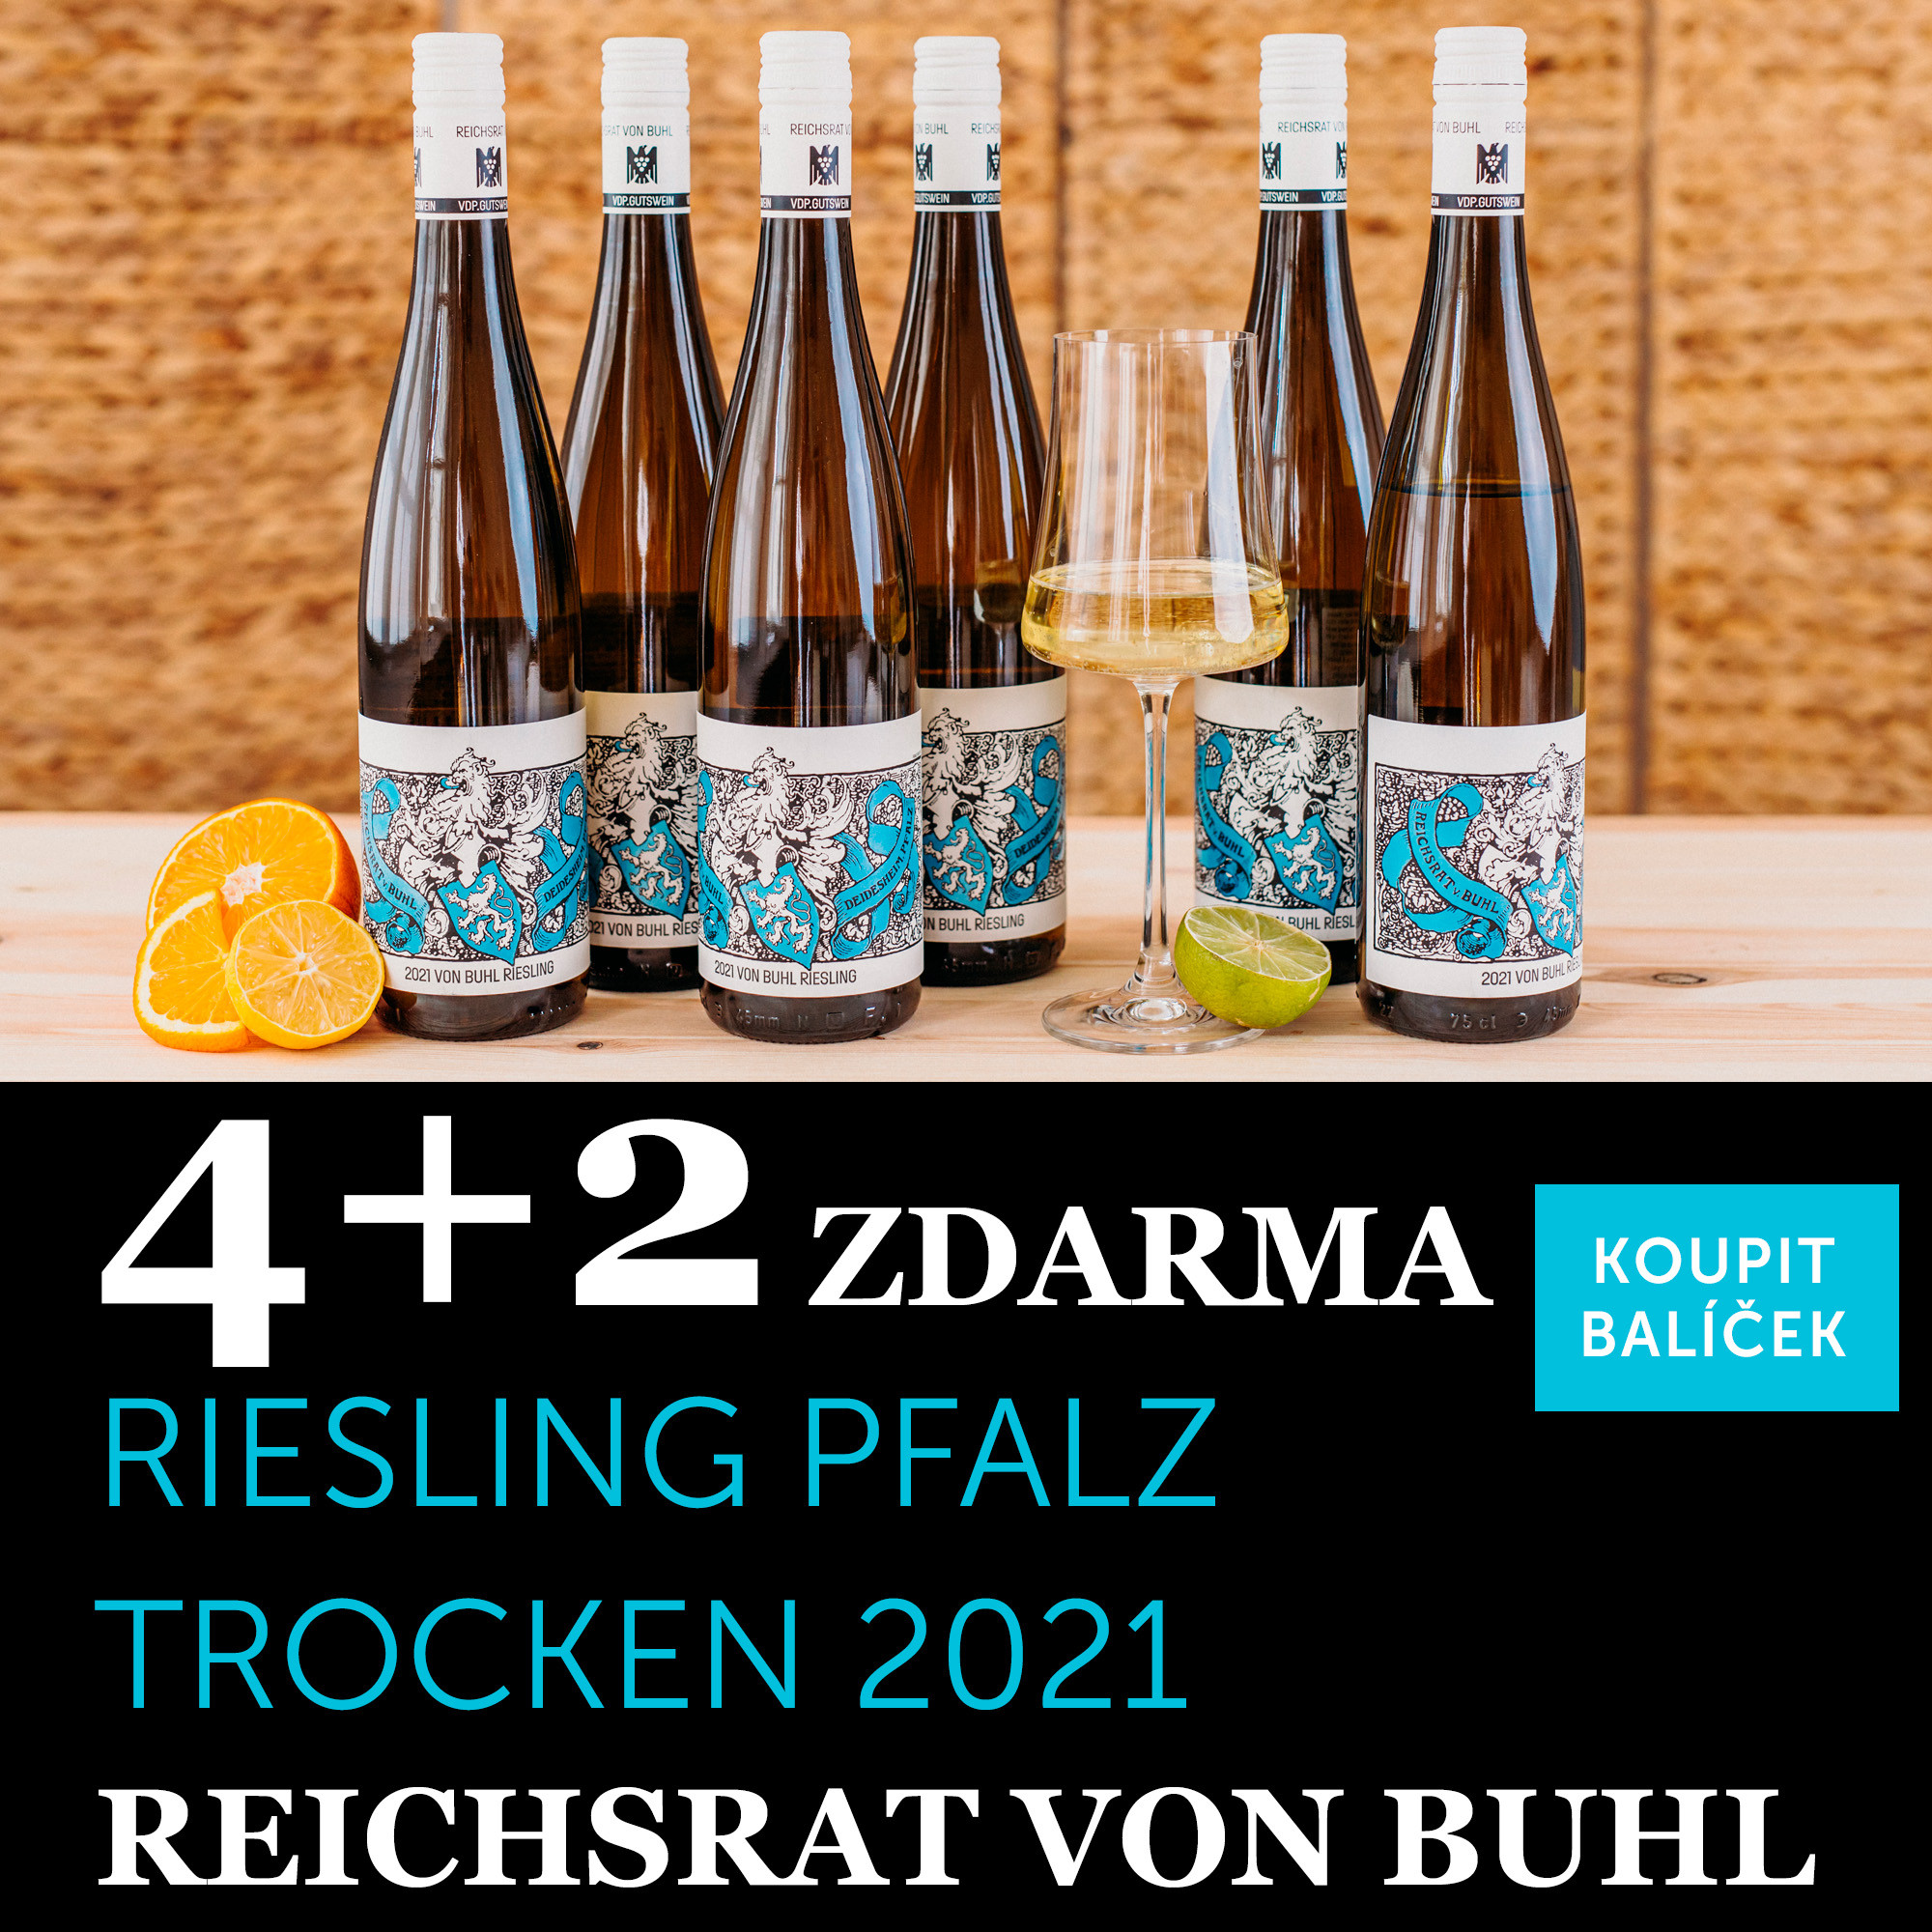 Víno měsíce května - Von Buhl Riesling Pfalz trocken 2021 4+2 zdarma - UKONČENO